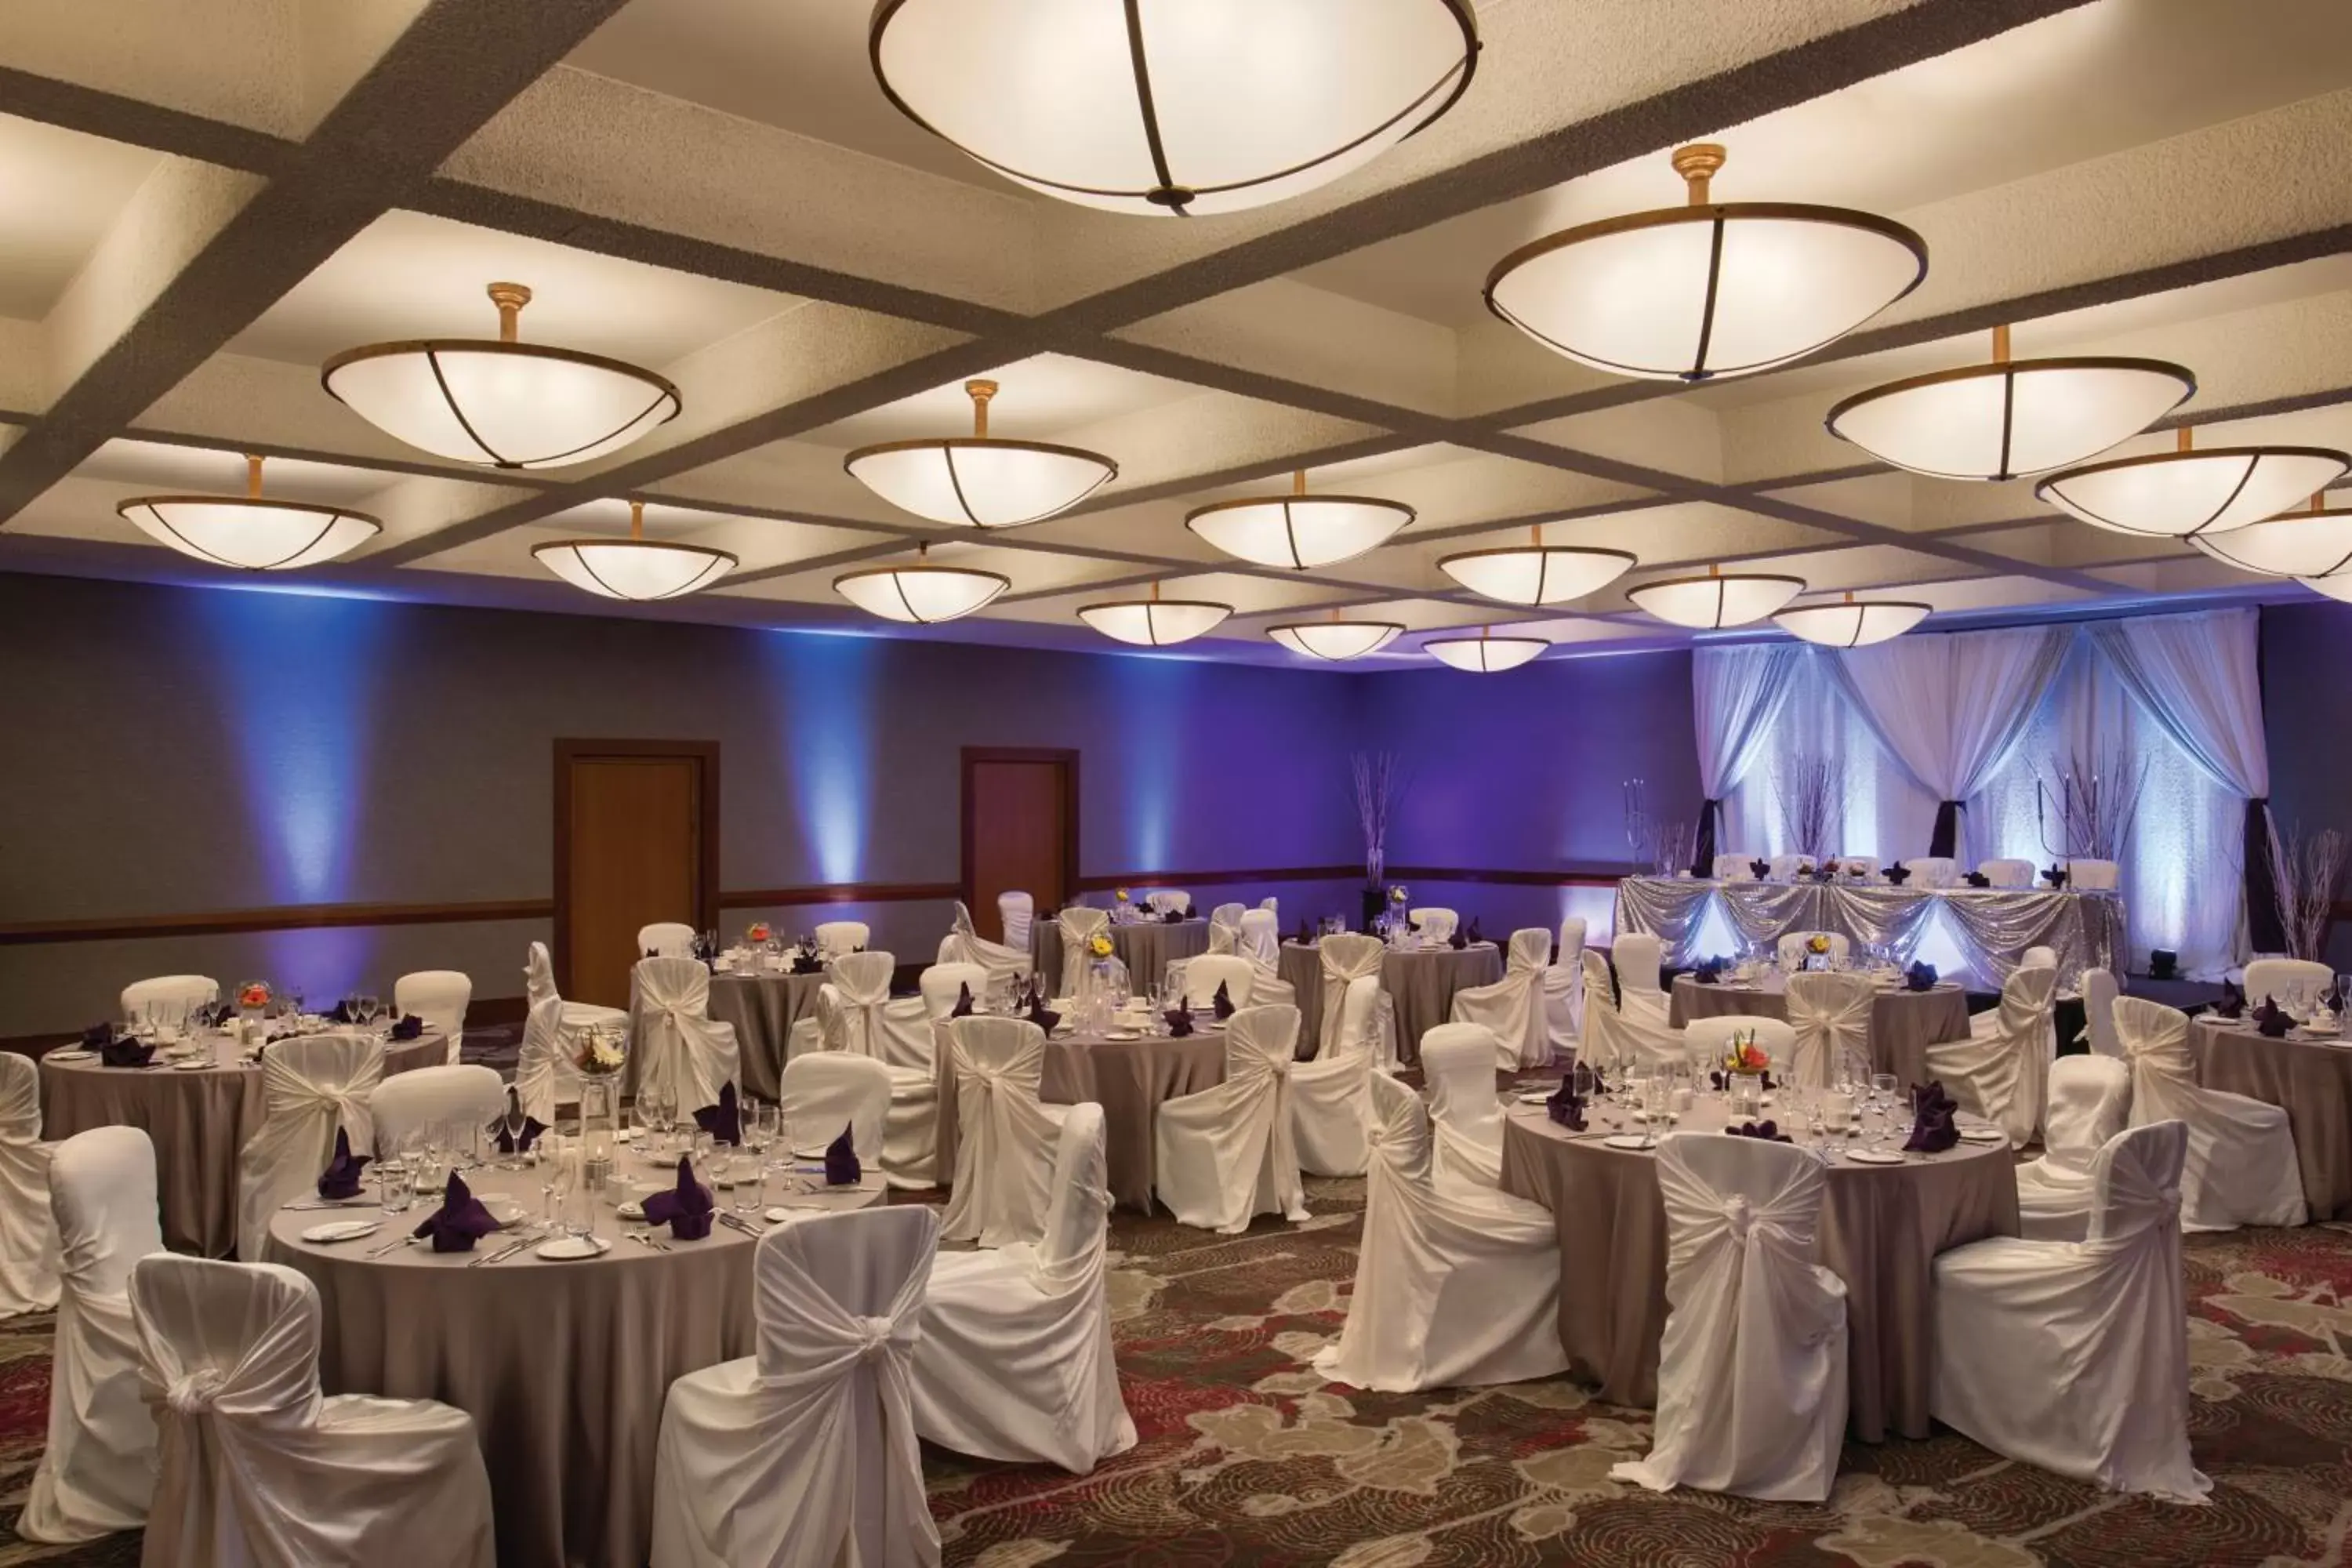 Banquet/Function facilities, Banquet Facilities in Coast Edmonton Plaza Hotel by APA